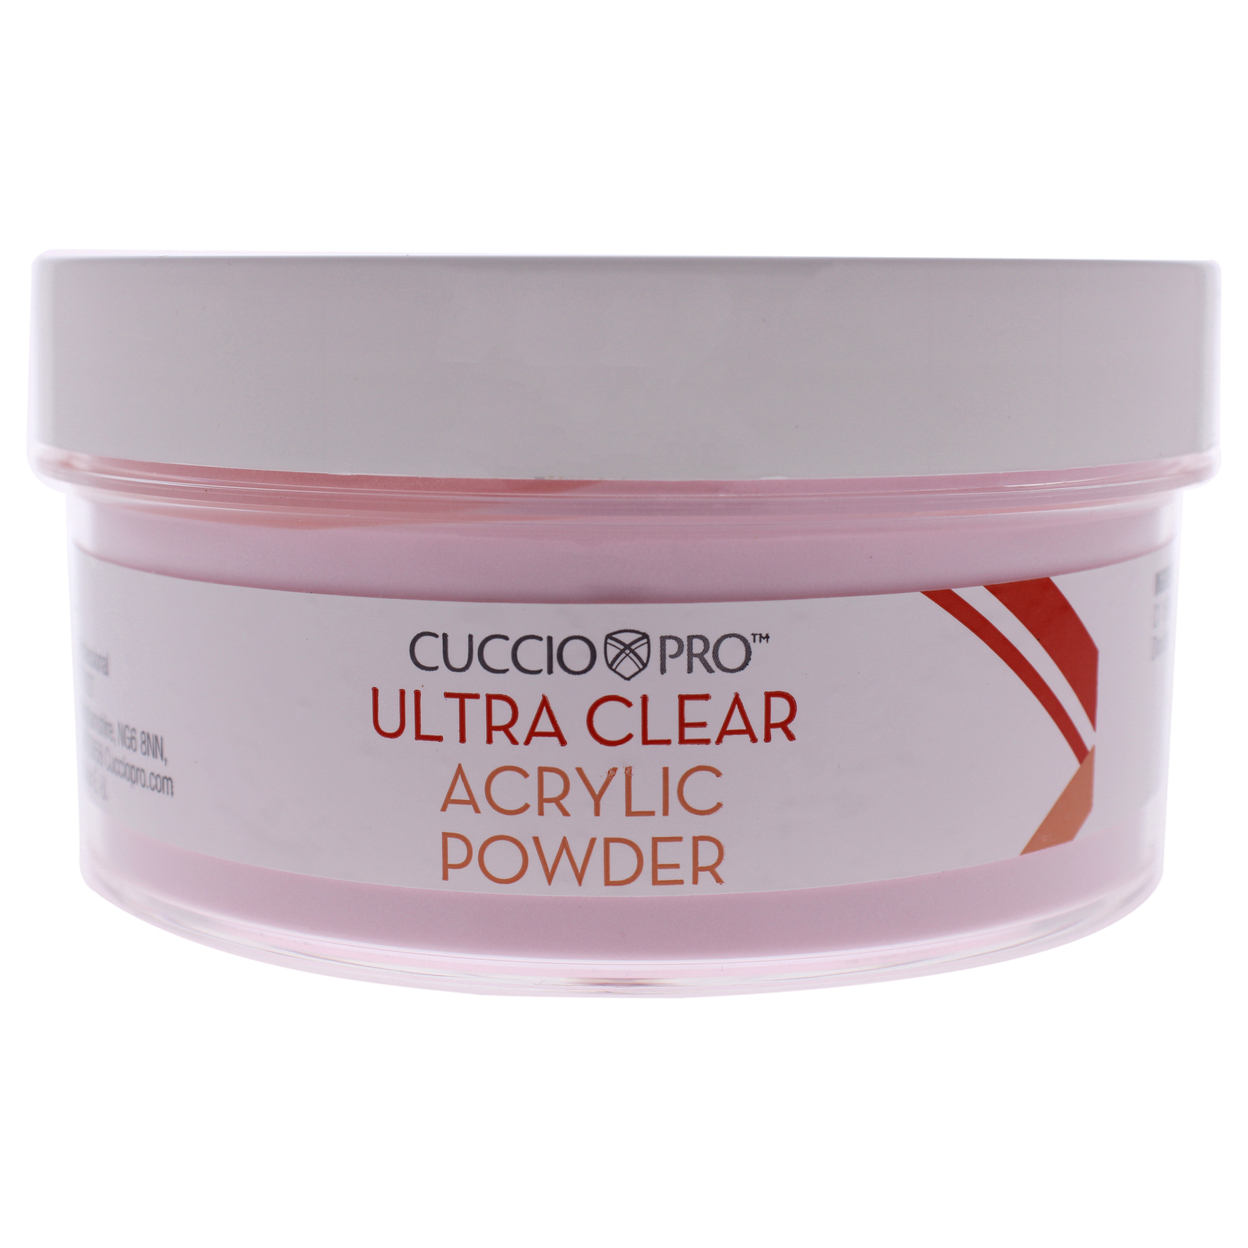 Cuccio Pro Ultra Clear Acrylic Powder - Extreme Pink 12.75 Oz